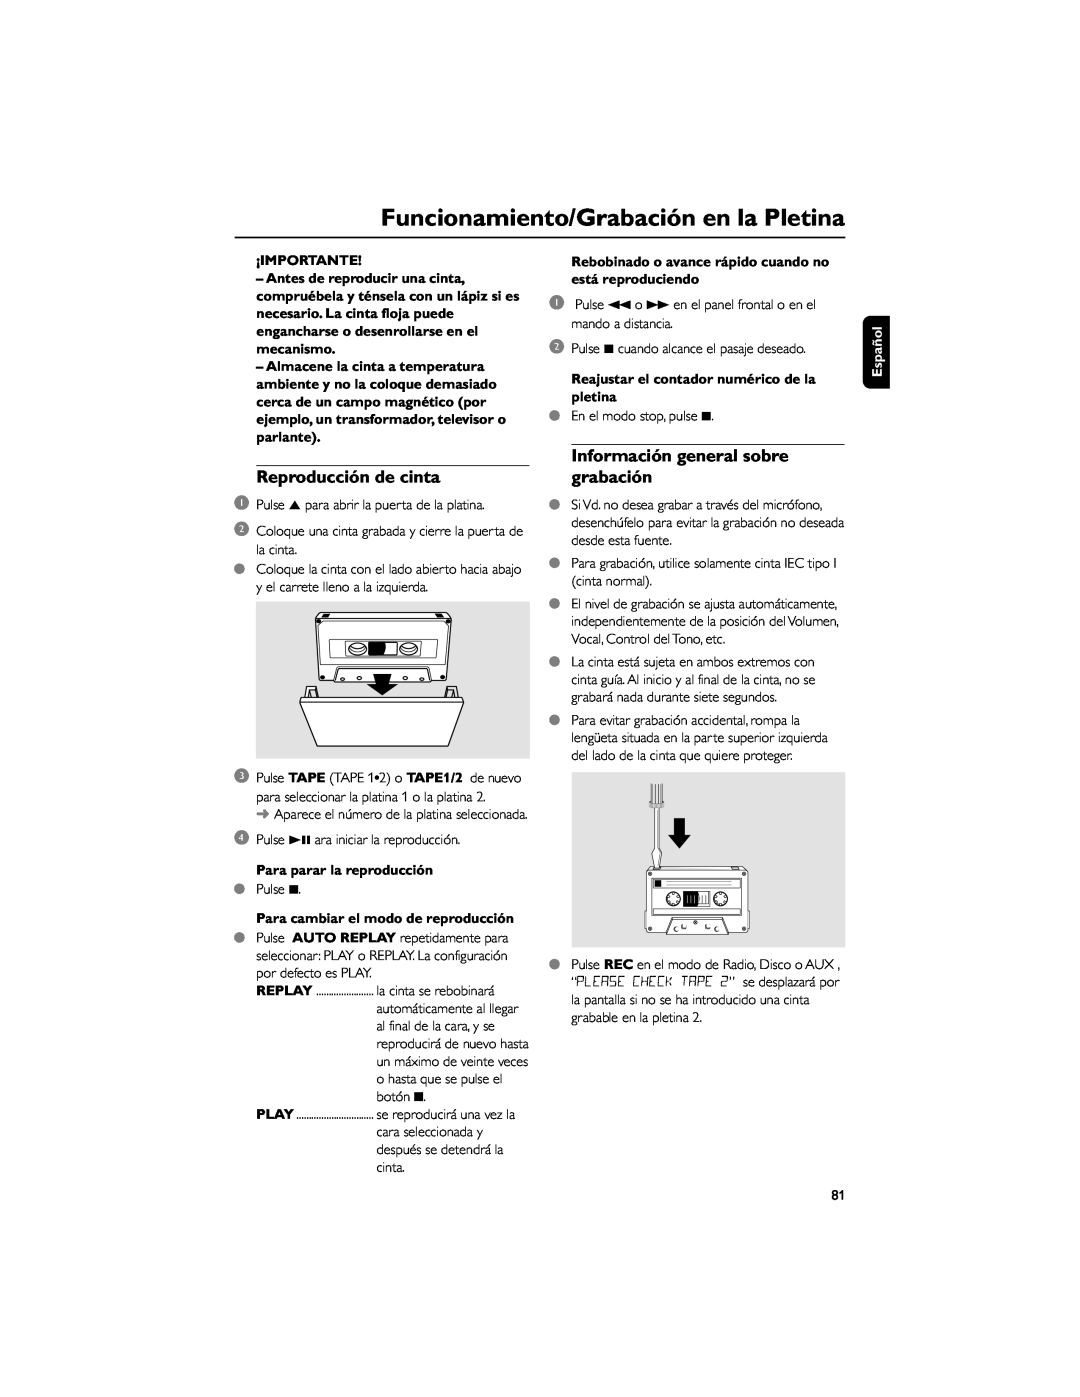 Philips FWD792 Funcionamiento/Grabación en la Pletina, Reproducción de cinta, Información general sobre grabación, Español 